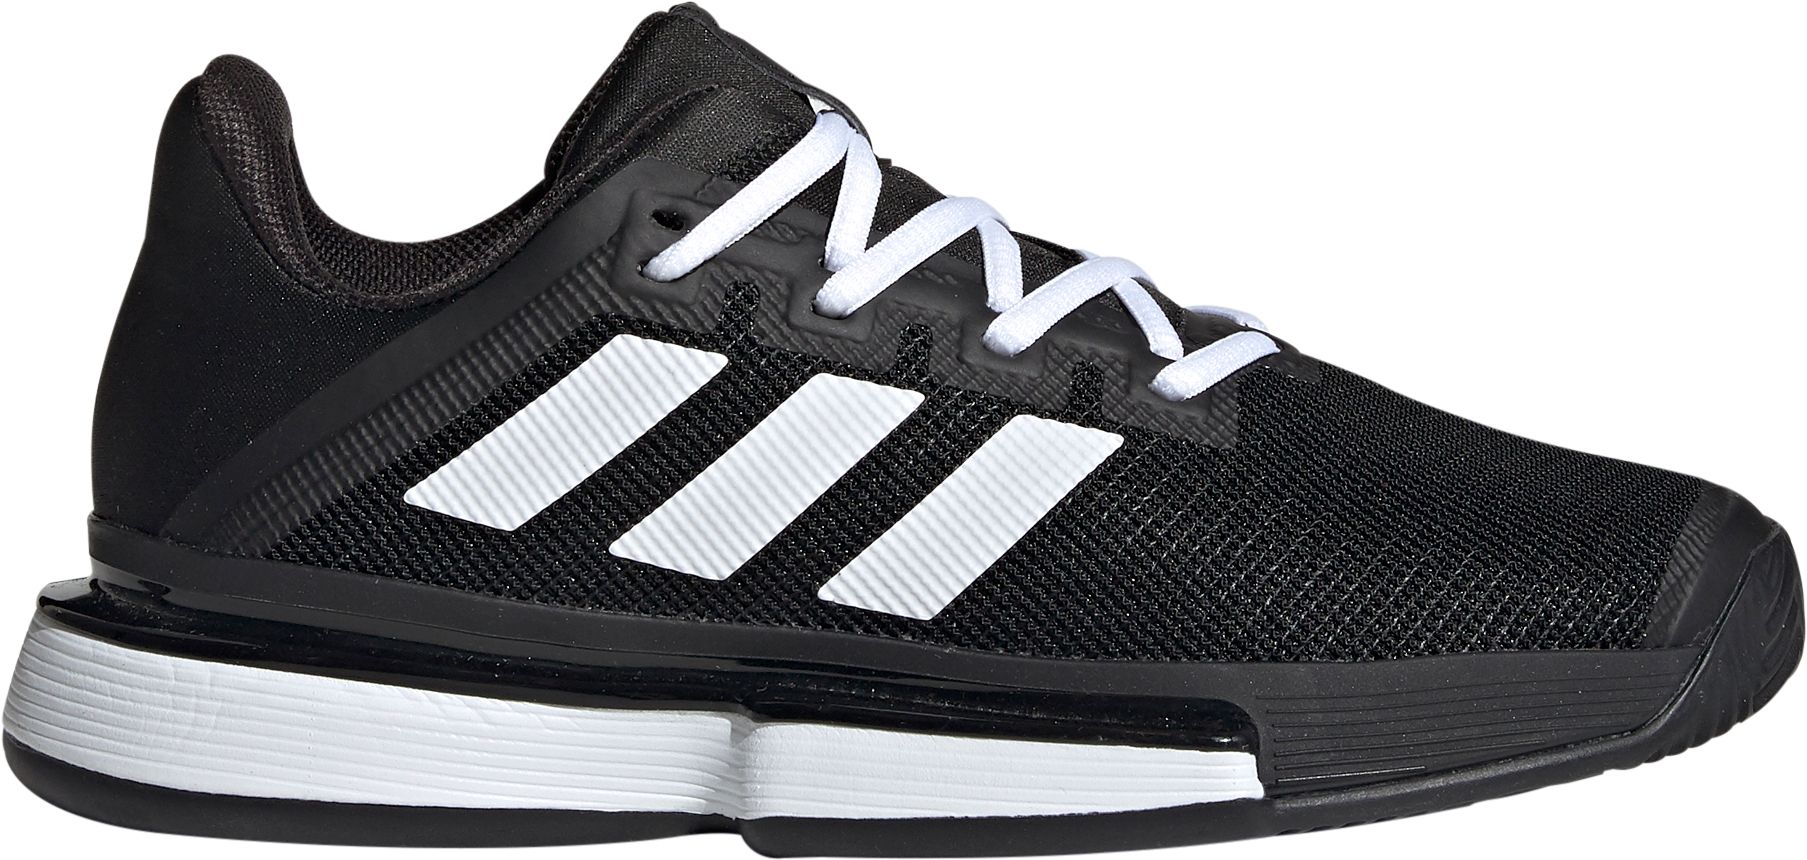 black adidas womens tennis shoes